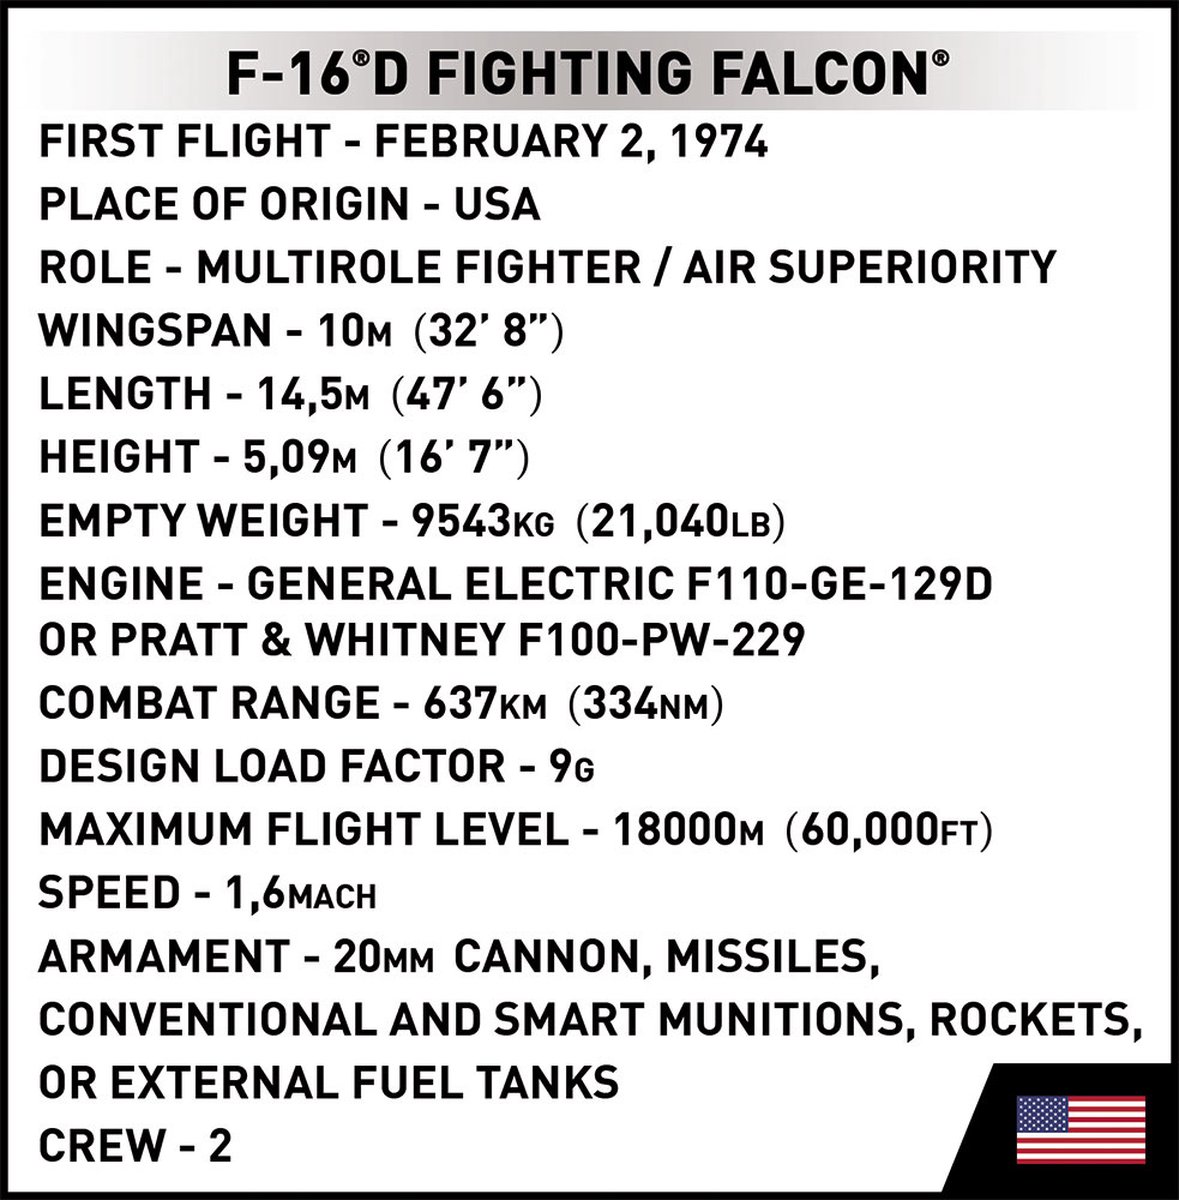 Autres jeux de construction Cobi 5815 - Avion de Chasse F-16 D